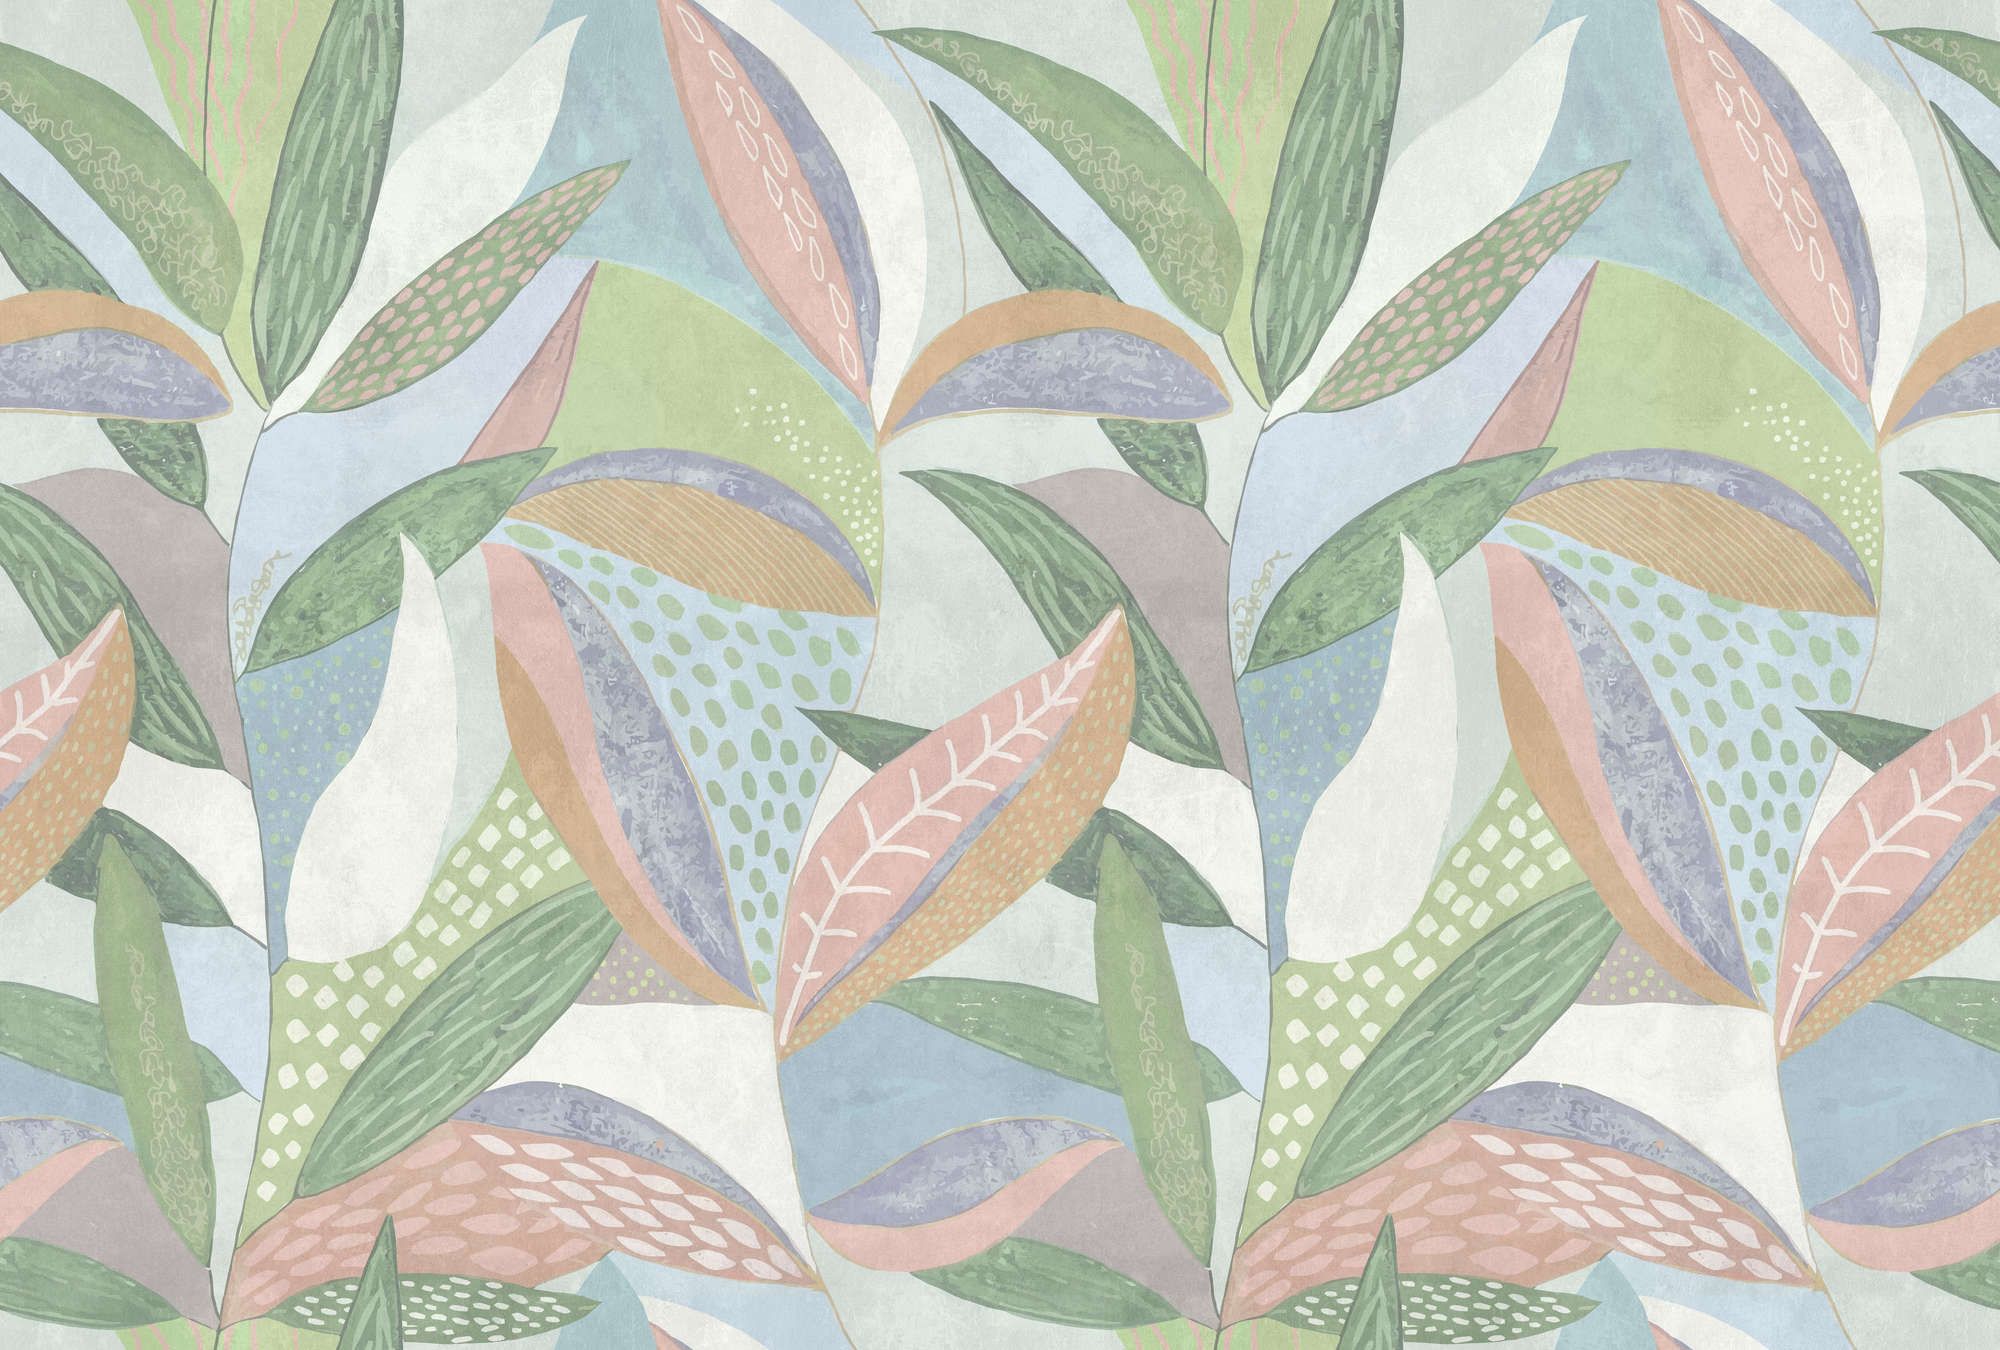             papier peint en papier »emilia« - Motif de feuilles pastel multicolores sur structure d'enduit béton - vert, bleu, rose | Intissé mat et lisse
        